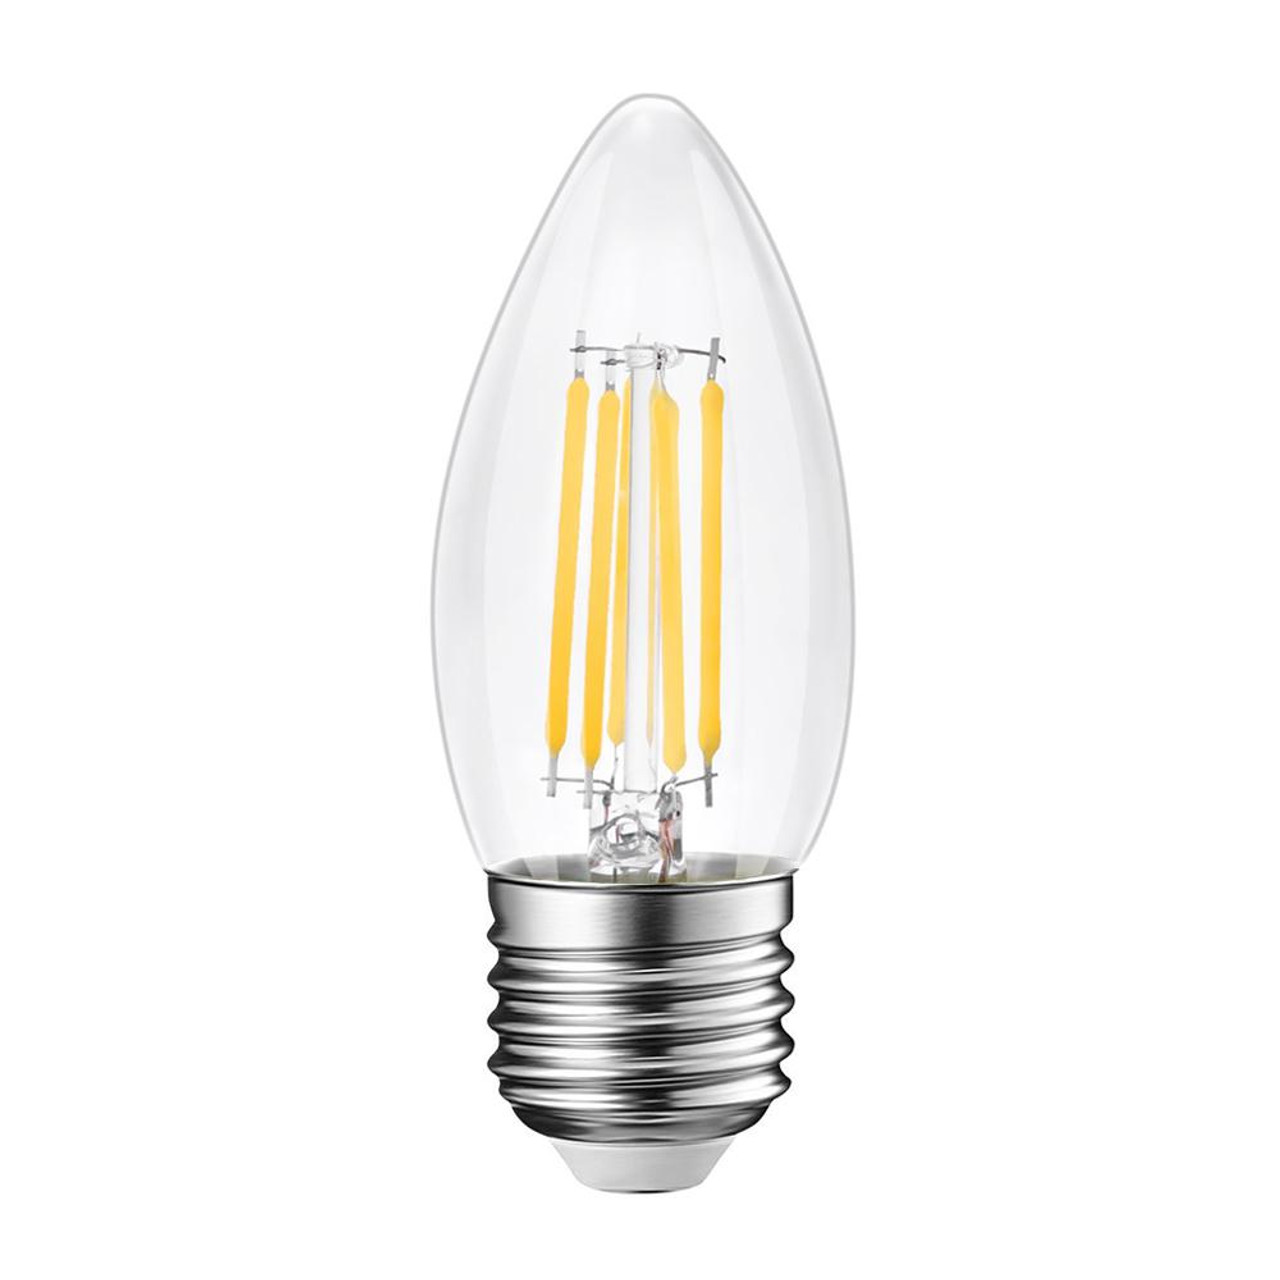 5W LED Filament Candle Bulb ES 500 Lumens